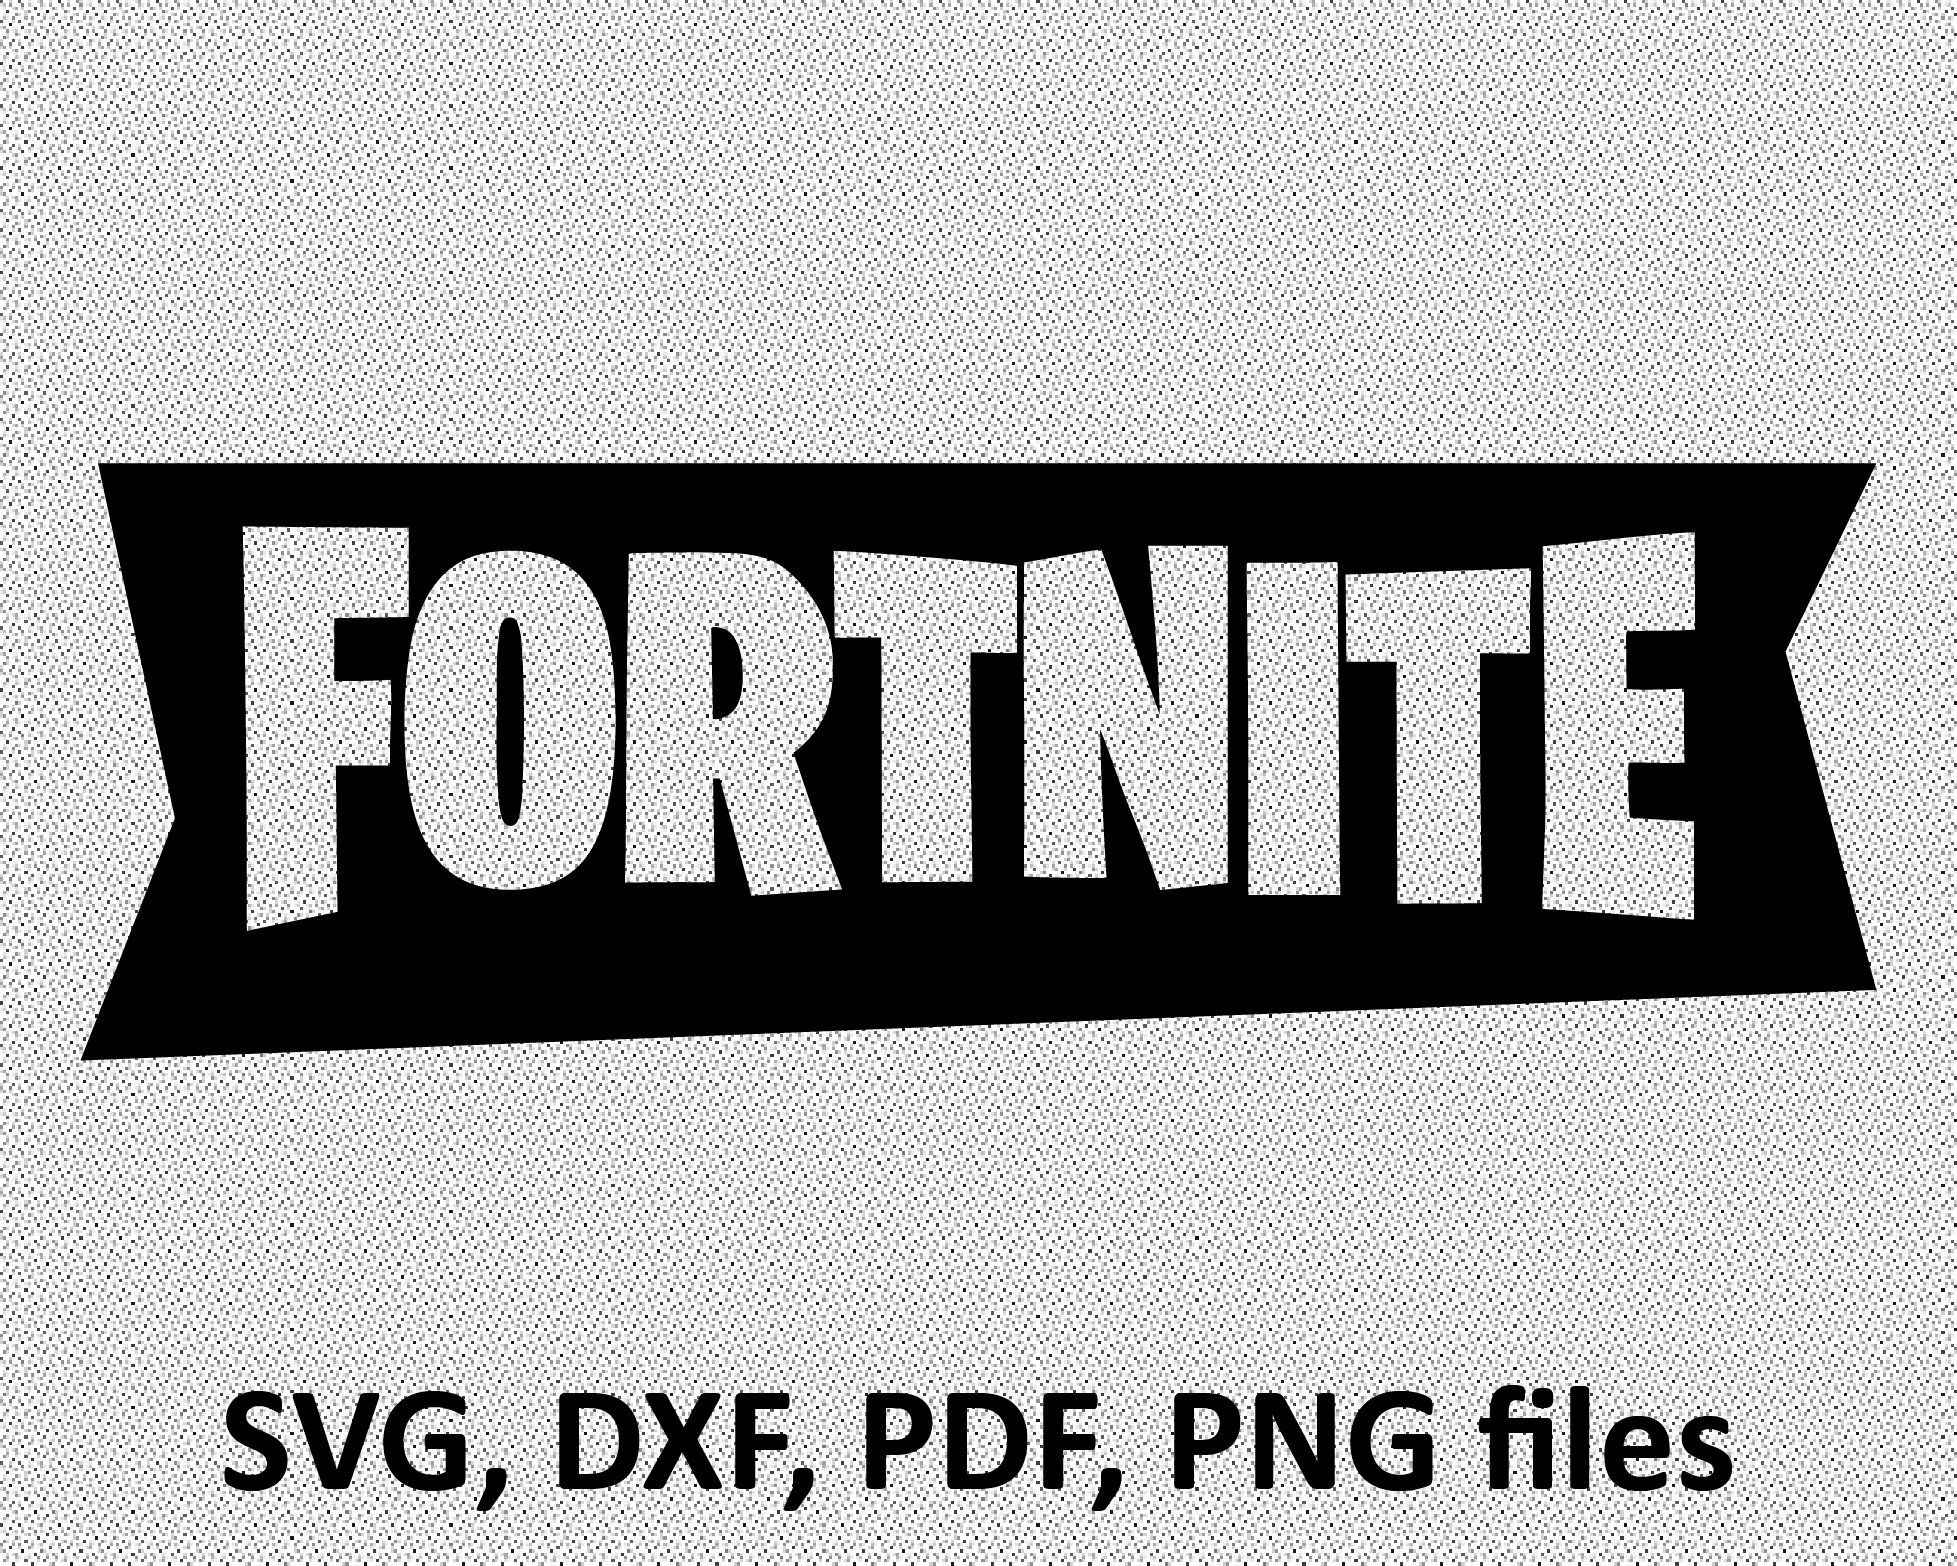 Download Fortnite SVG File Fortnite logo pdf DXF PNG Cut File | Etsy